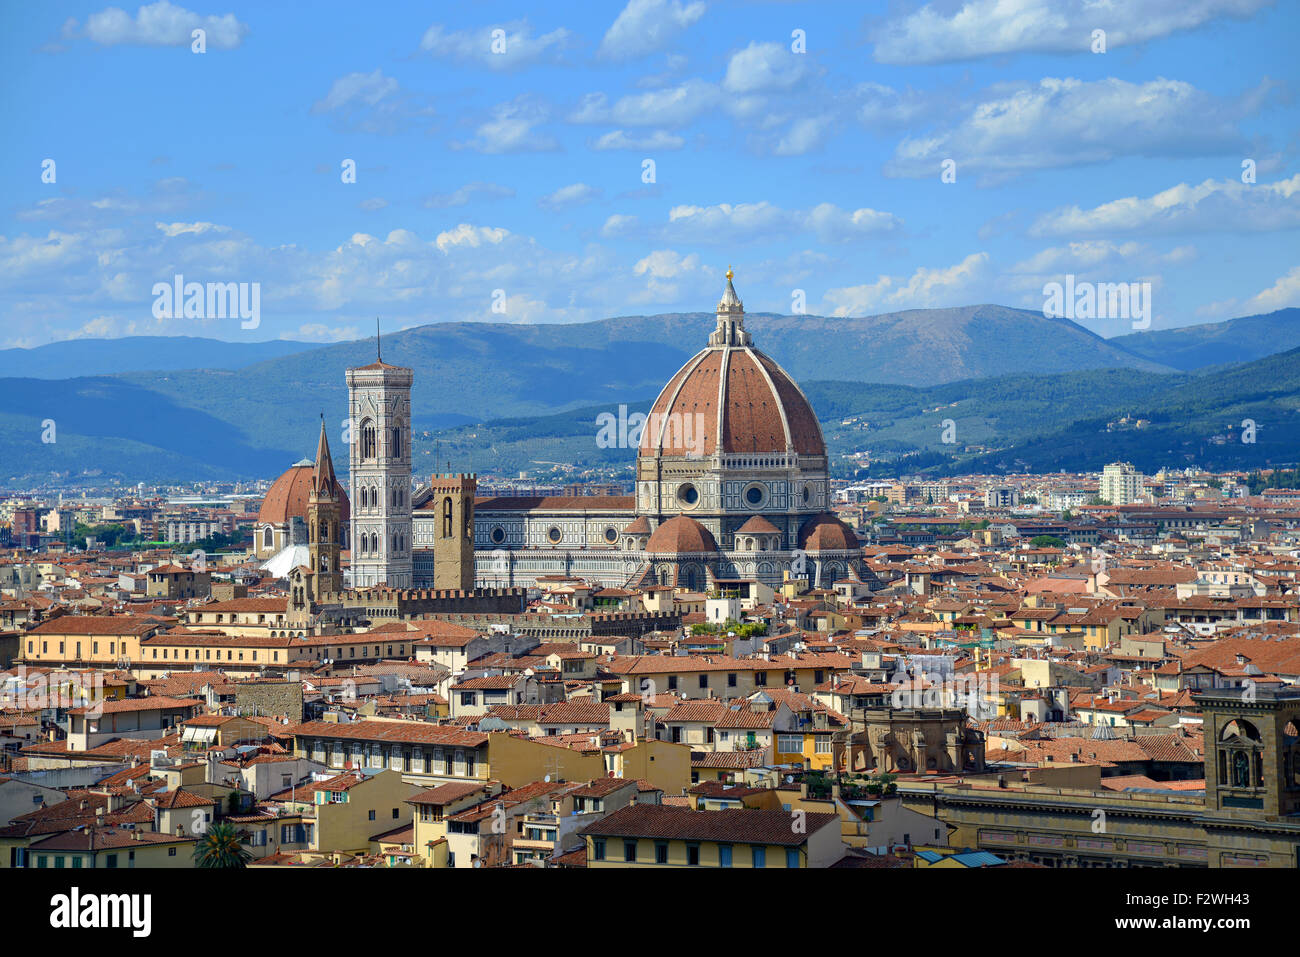 La Catedral de Florencia (Duomo) situado en la Piazza del Duomo, Florencia, Toscana, Italia. Foto de stock